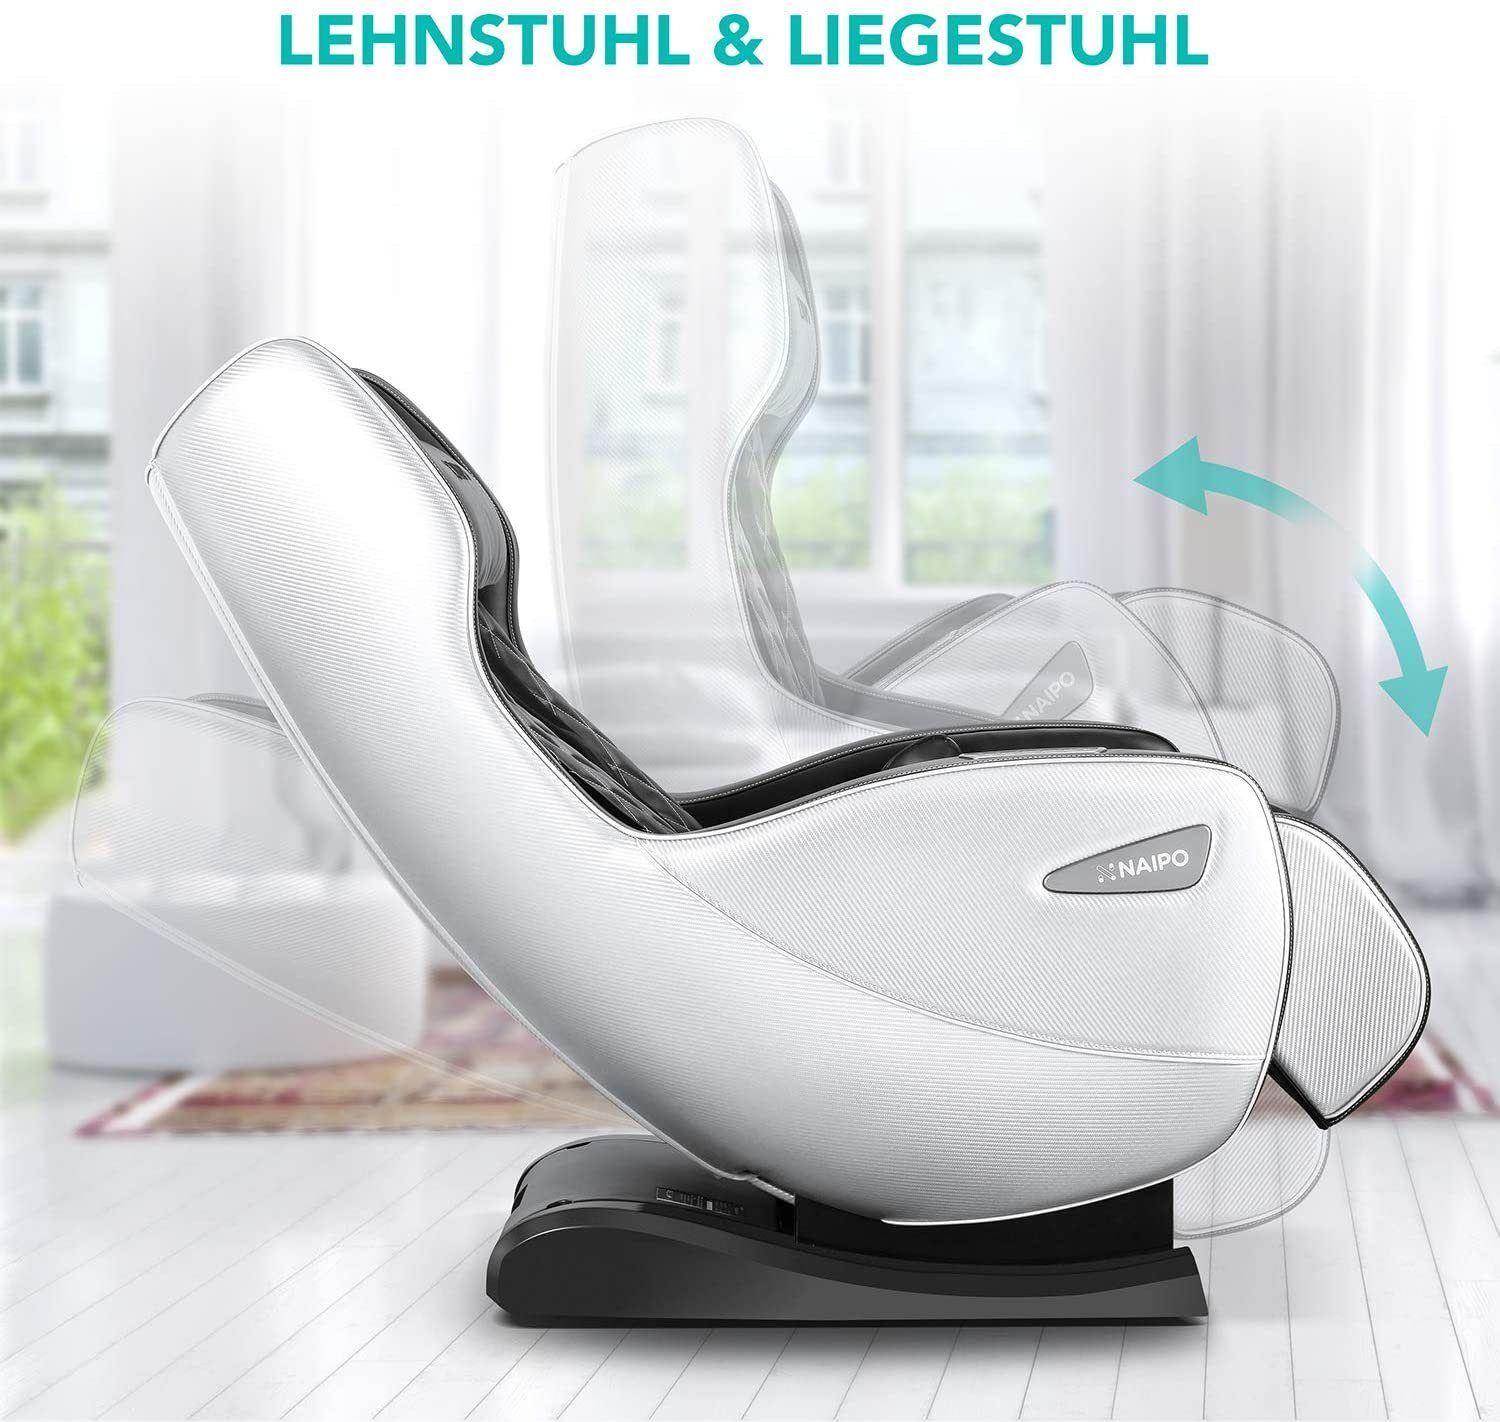 NAIPO Massagesessel, Platzsparend Beige-Dunkelbraun-Aufbauservice Massagestuhl mit Bluetooth, Liegeposition